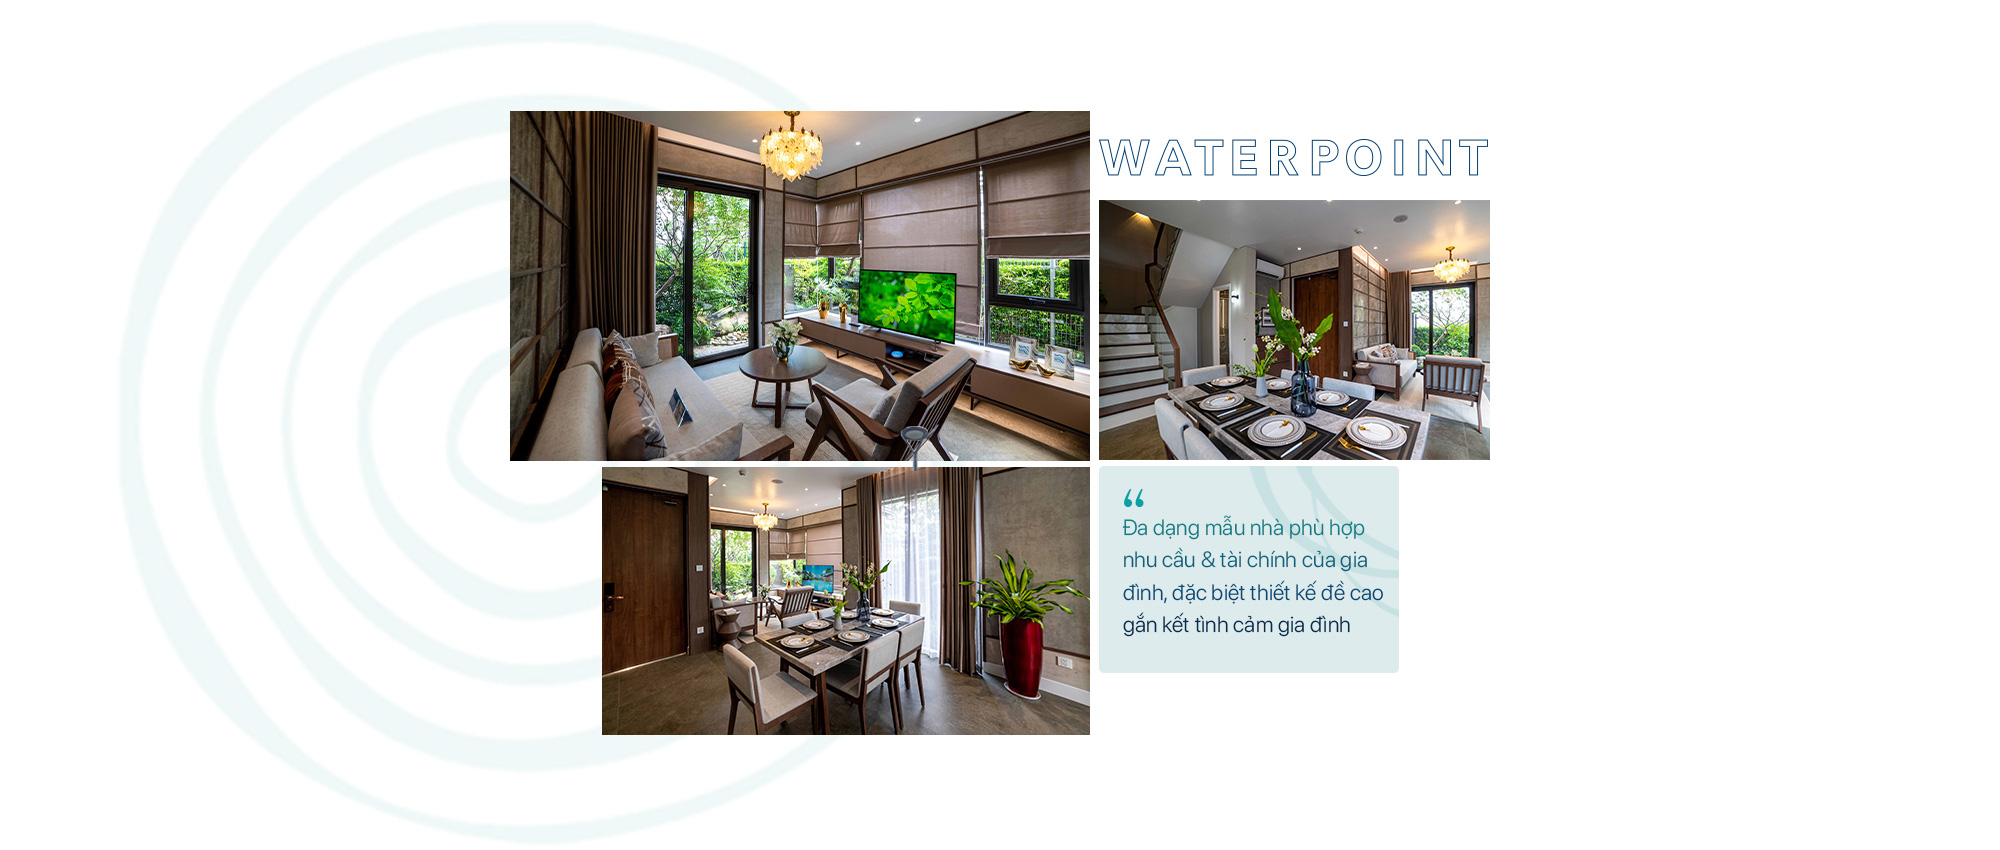 Waterpoint – Nơi chuẩn mực quốc tế kiến tạo nên bản sắc riêng của “Thành phố bên sông” - Ảnh 7.